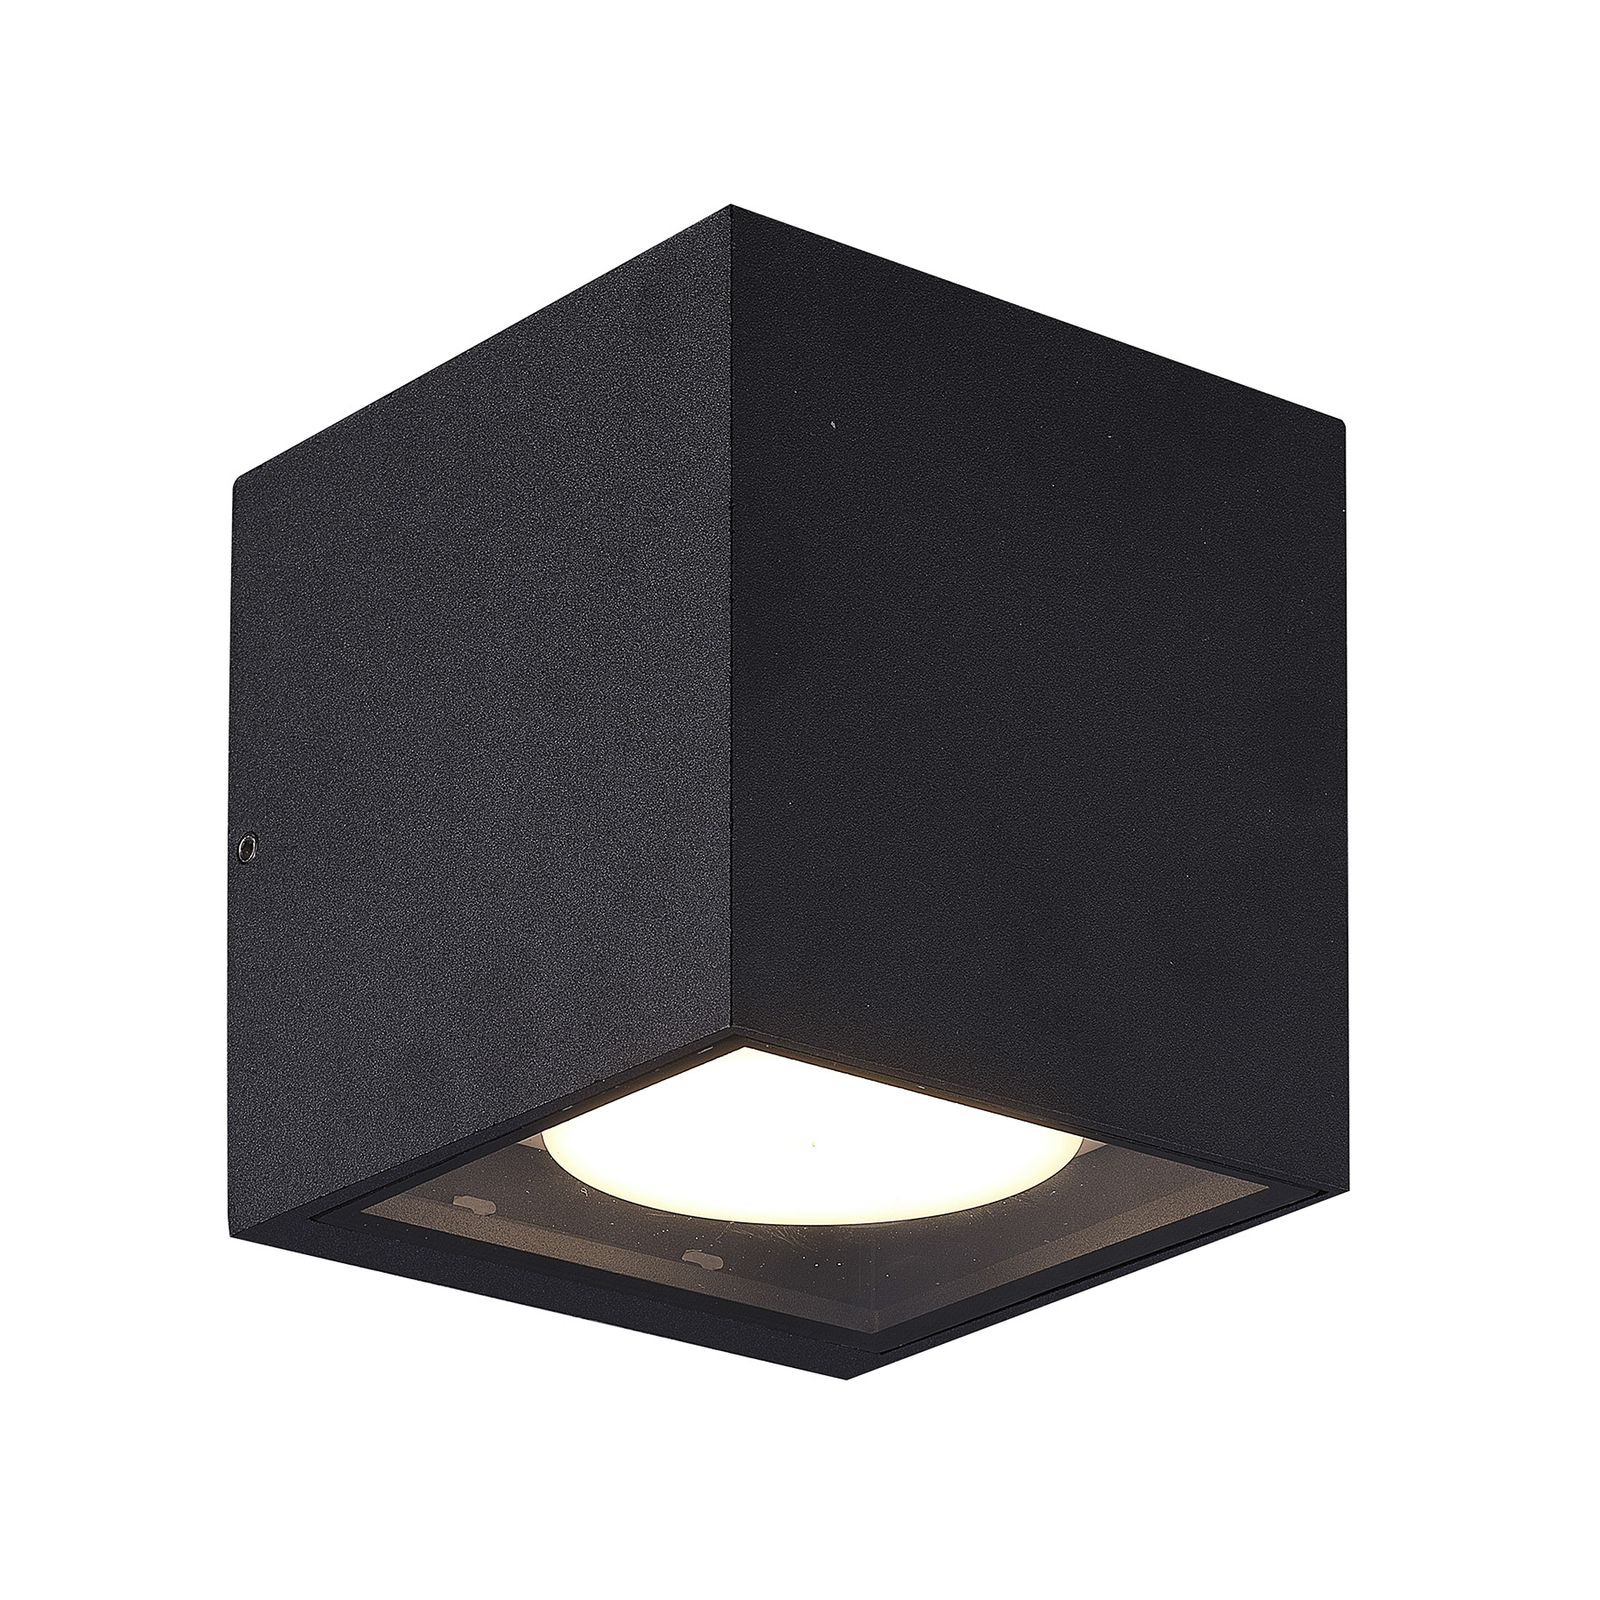 Prios udendørs væglampe Tetje, sort, kantet, 11,5 cm, 2 stk